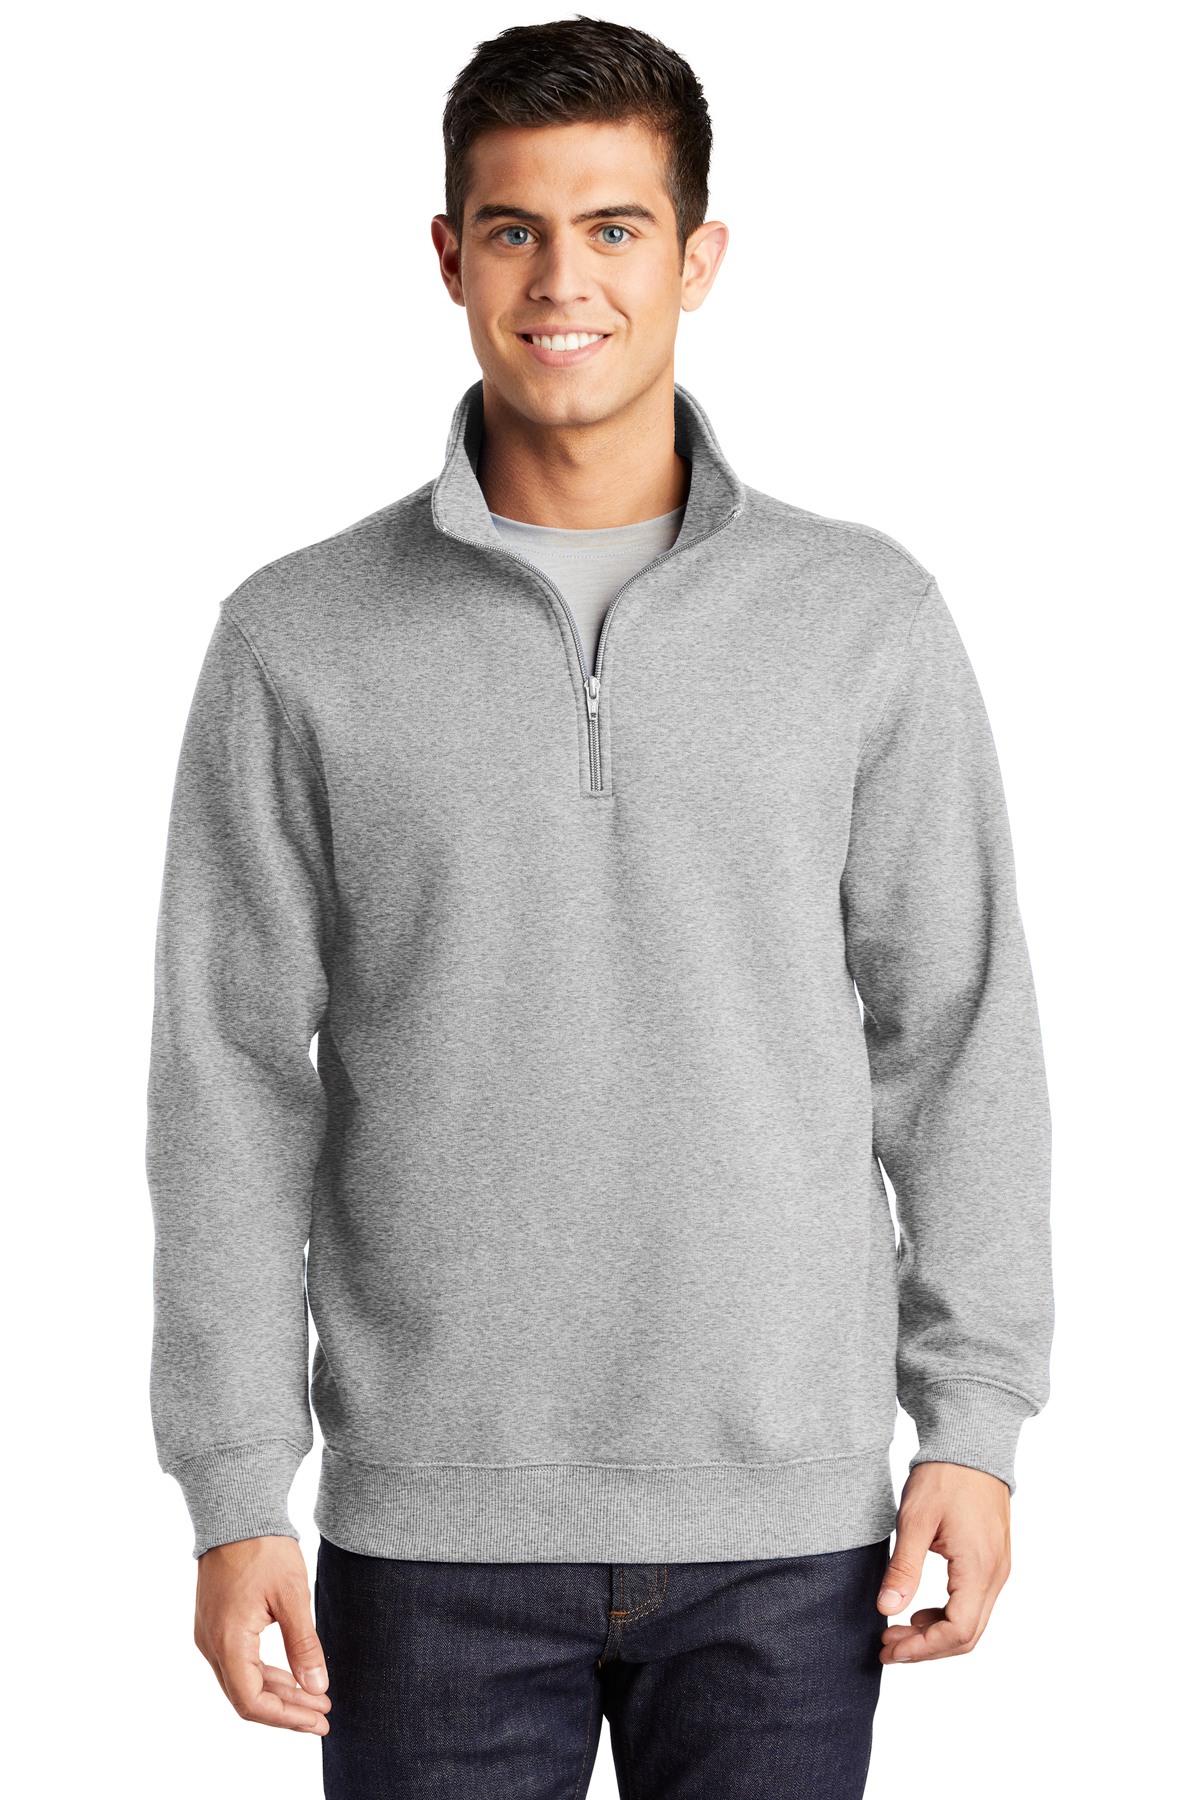 Sport-Tek 1/4-Zip Sweatshirt | Product | Company Casuals